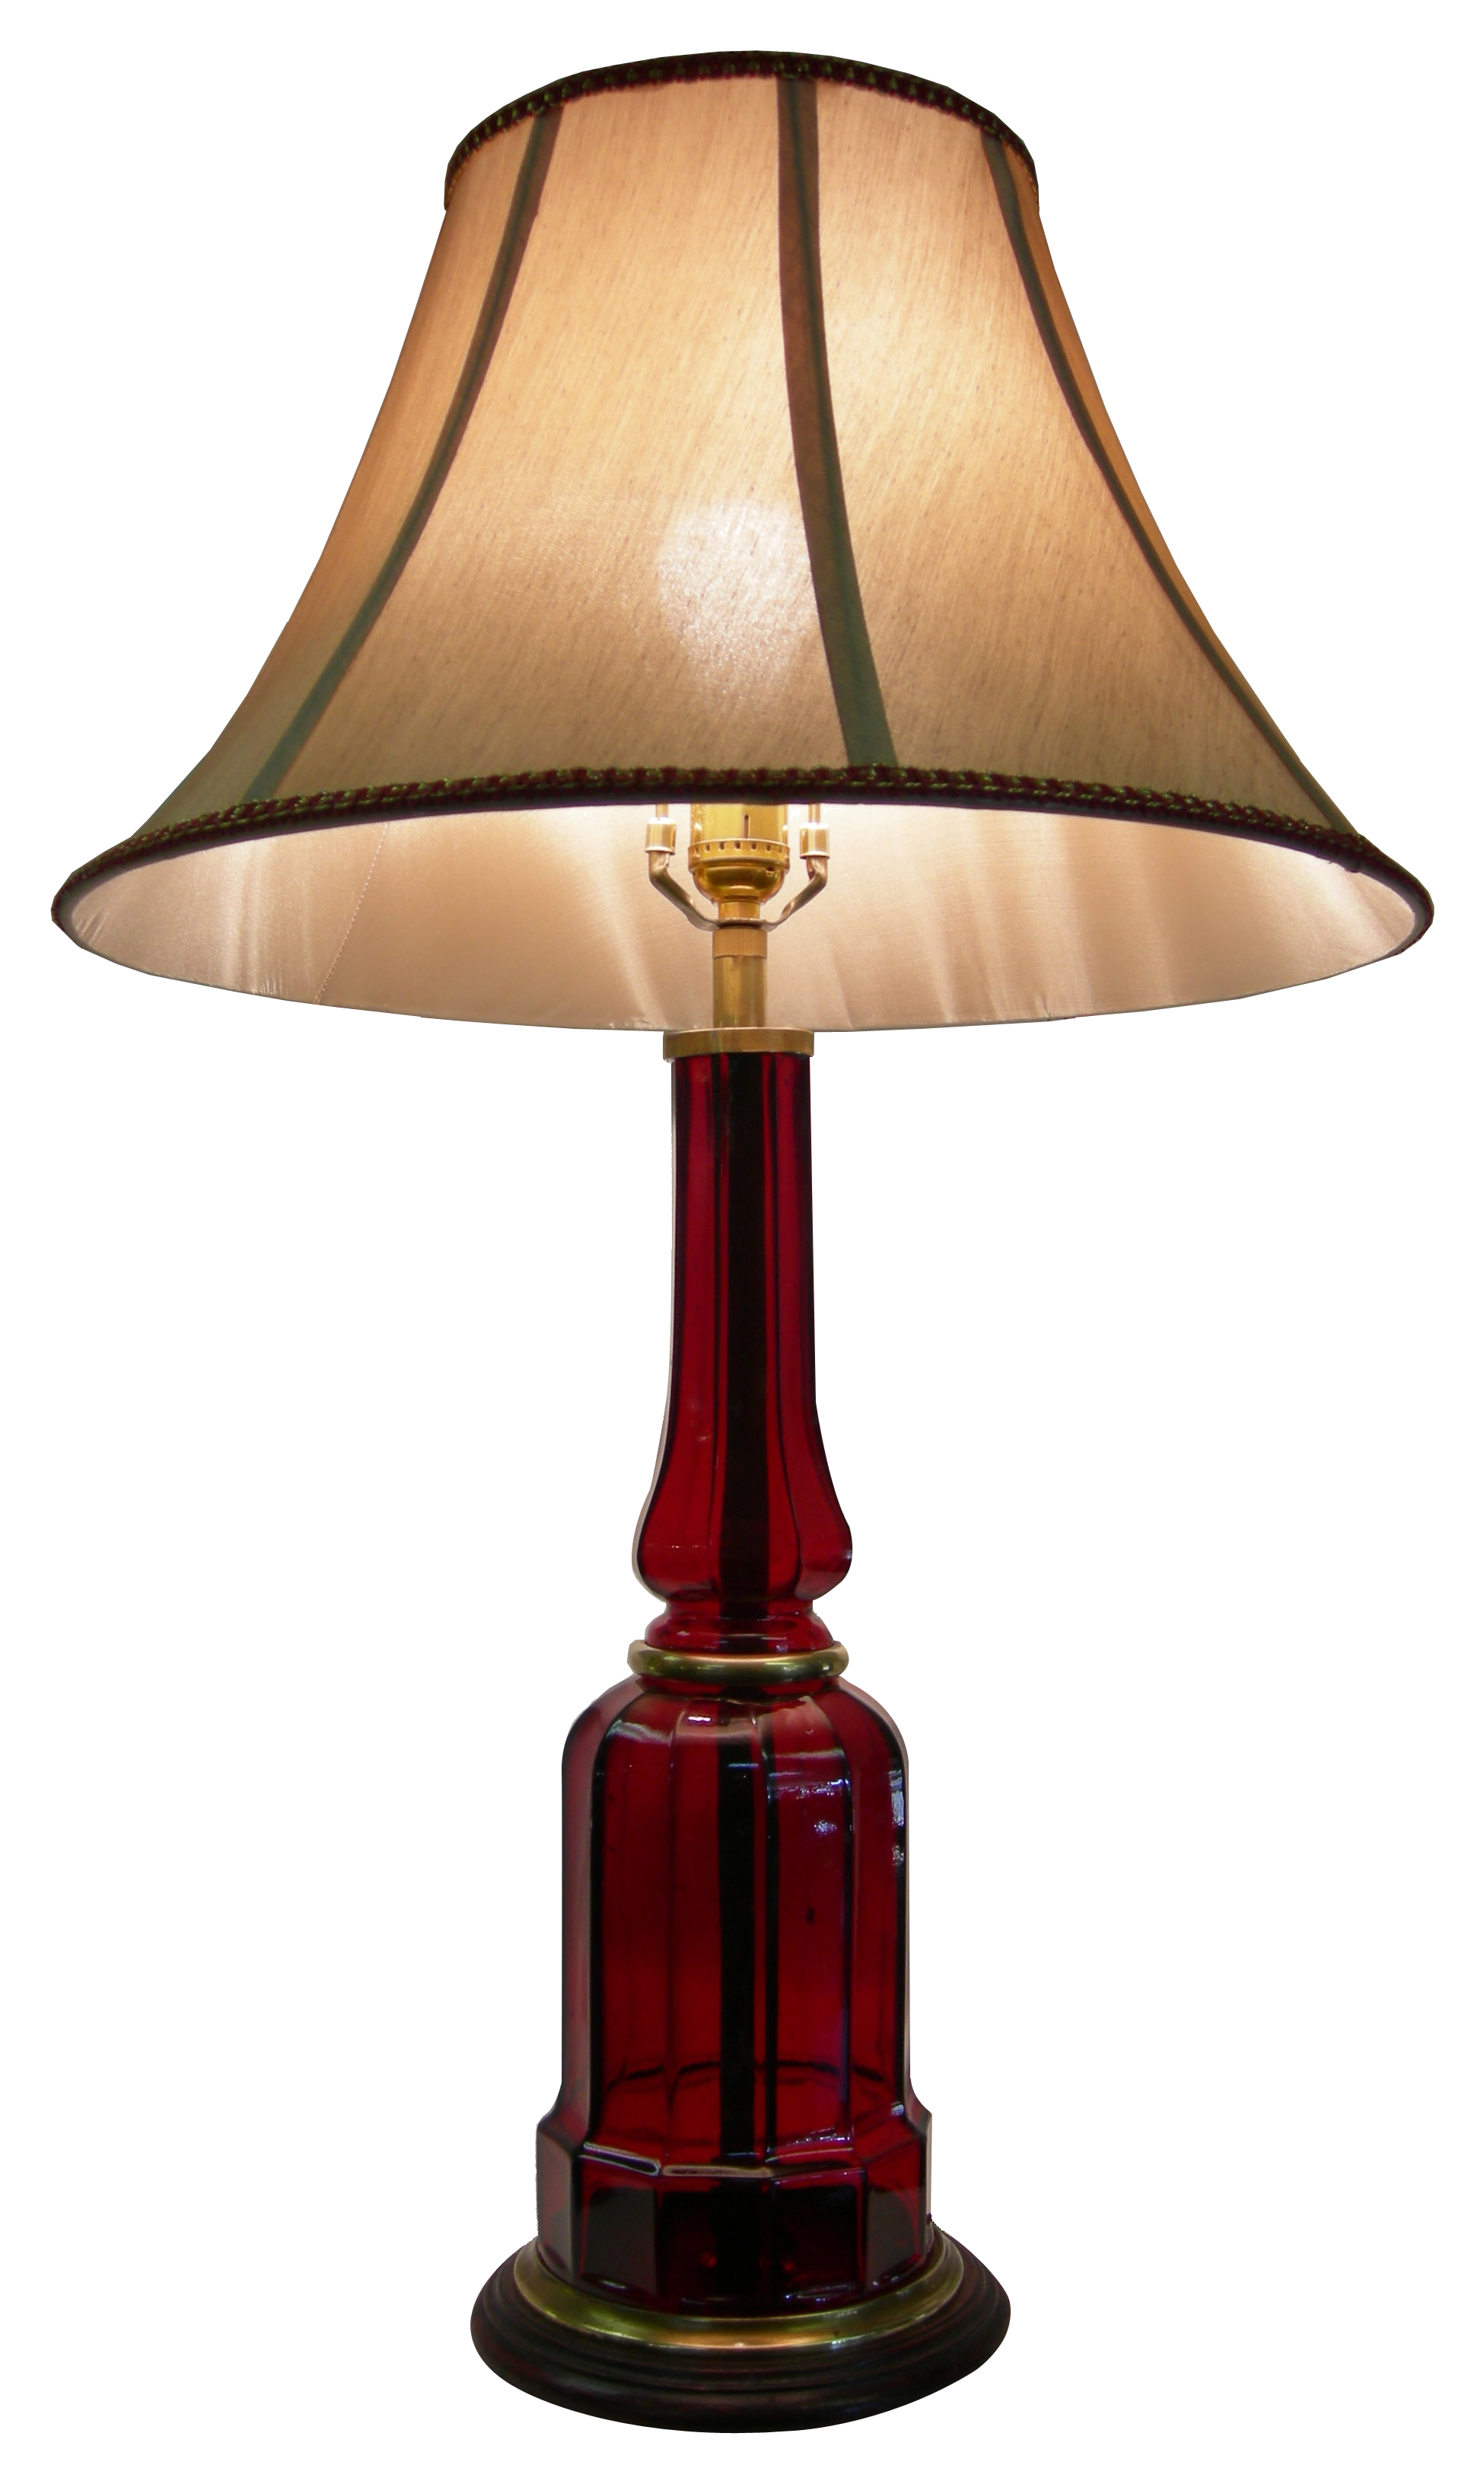 PNG Lamp - 88105